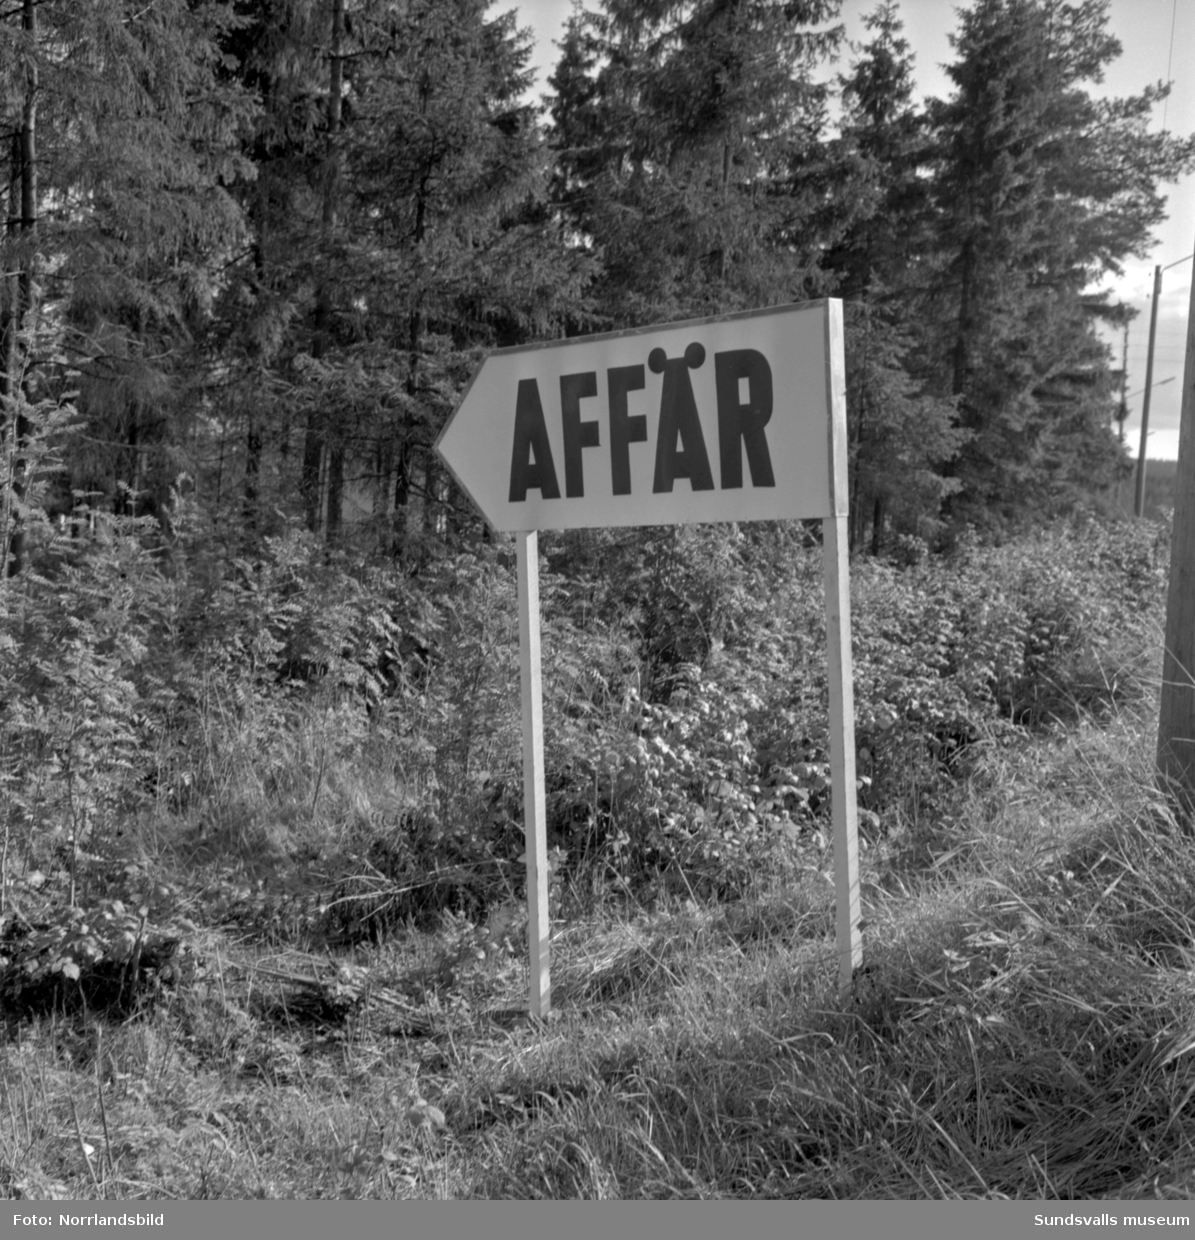 Skyltning utefter vägen mellan Sundsvall och hälsingegränsen 1961. Bland annat Bergafjärden, Dingersjö, Bredsand och Kusten. I Njurundabommen fick länge trafikanterna söderifrån lätta på gasen och anamma ett makligare tempo. Men innan vägen som nu blivit ”gamla E4:an” byggdes, var det så här som korsningen i Bommen såg ut. Längst till höger i bild skymtar det före detta bankhuset som fortfarande finns kvar.